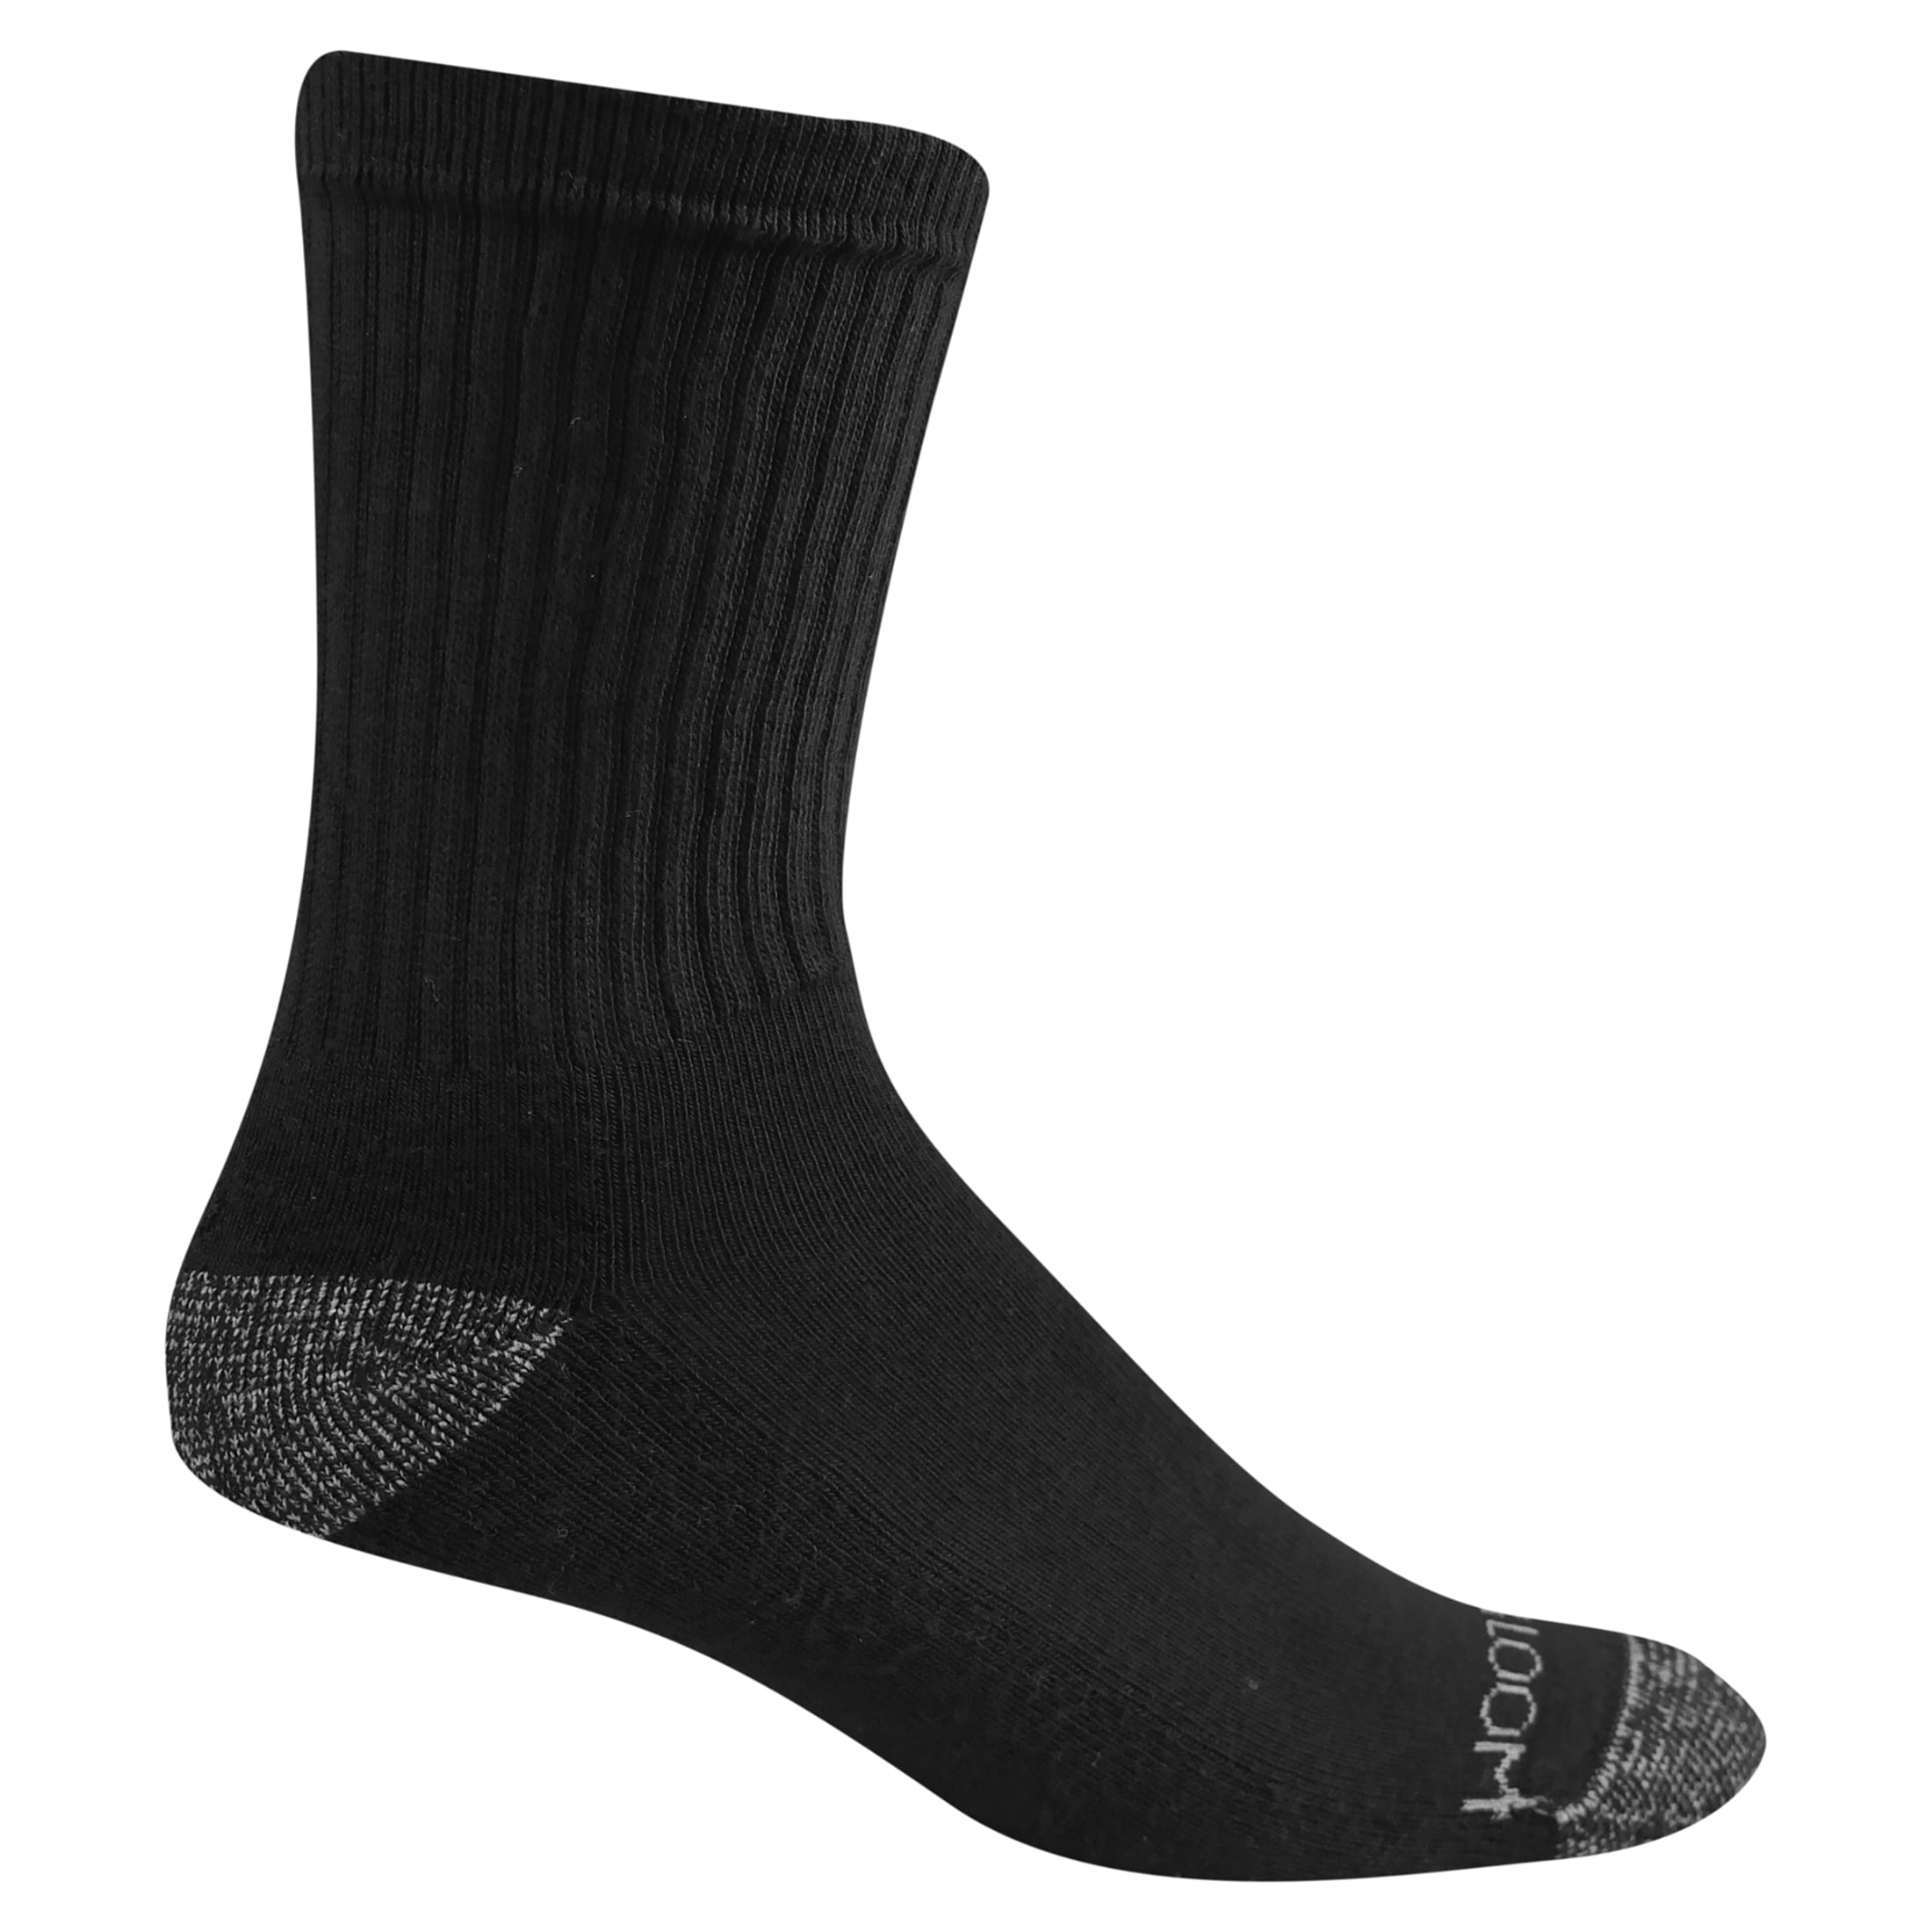 Fruit of the Loom Dual Defense Crew Socks for Men, Black, Sizes 6-12 ...